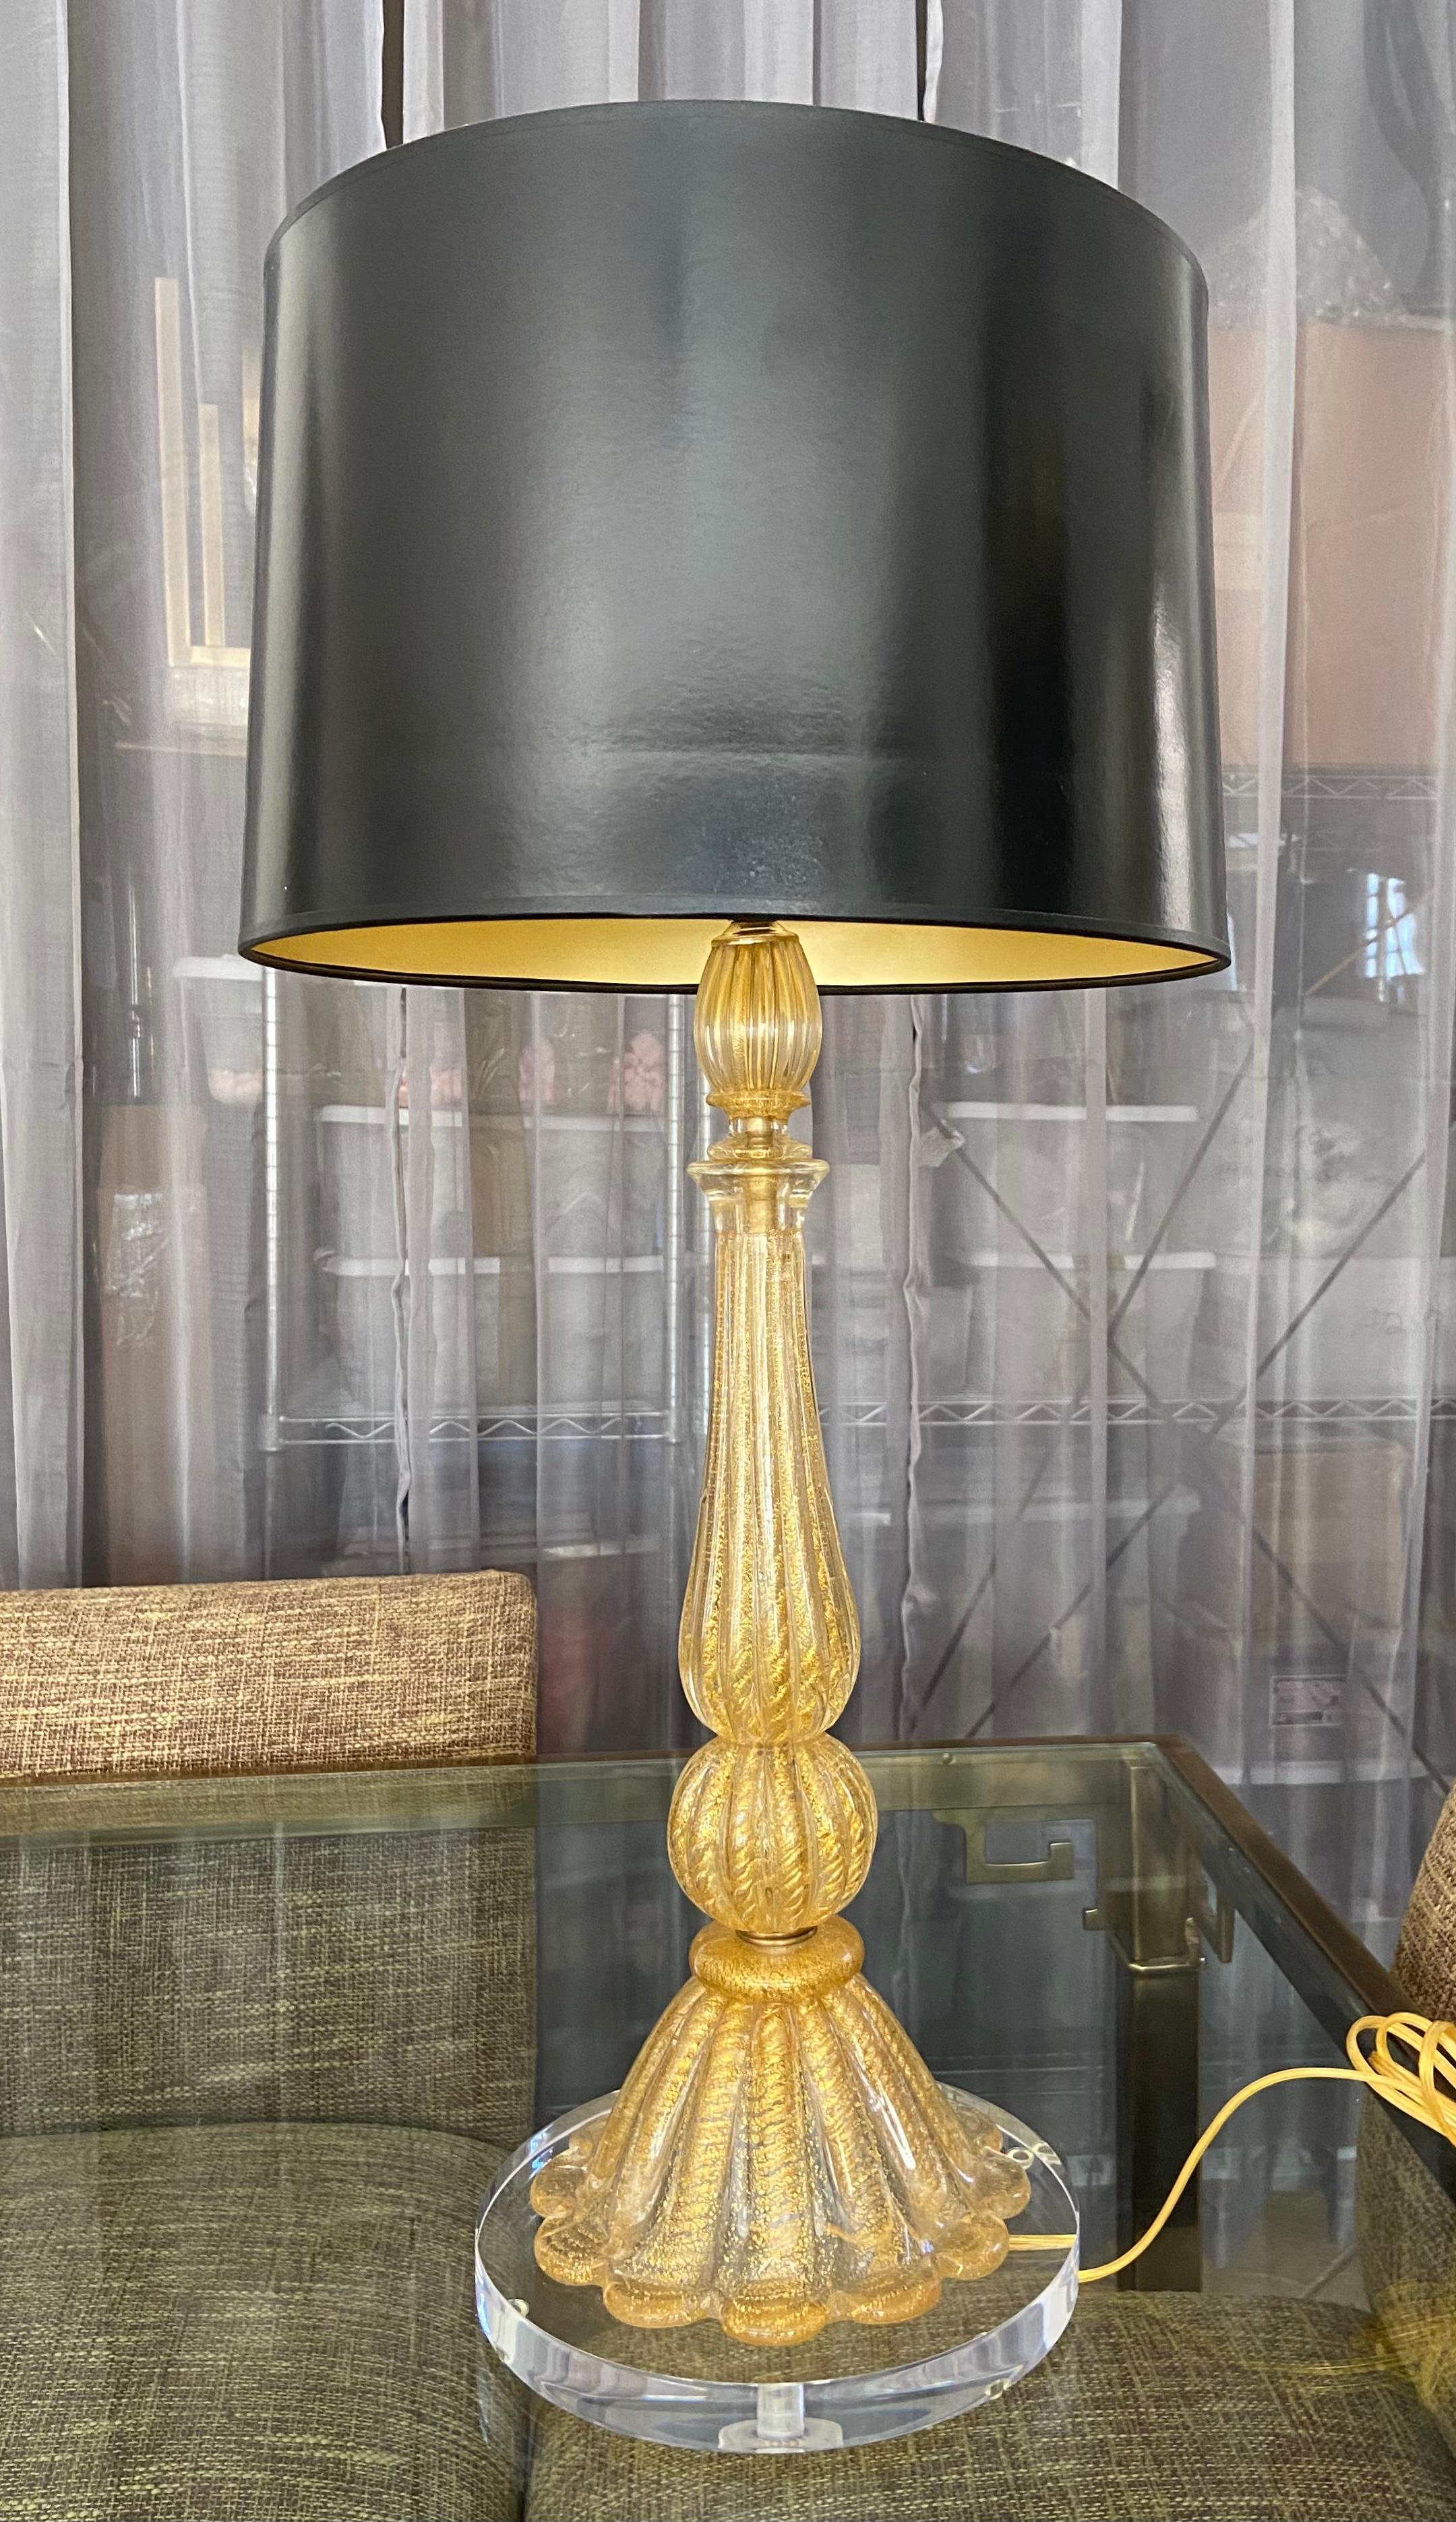 Lampe de table en verre Barovier & Toso selon la technique du Coronado d'ore, réalisée en verre épais transparent avec des inclusions d'or. Nouvellement câblé pour les États-Unis avec une nouvelle prise en laiton à 3 voies et un cordon. Monté sur